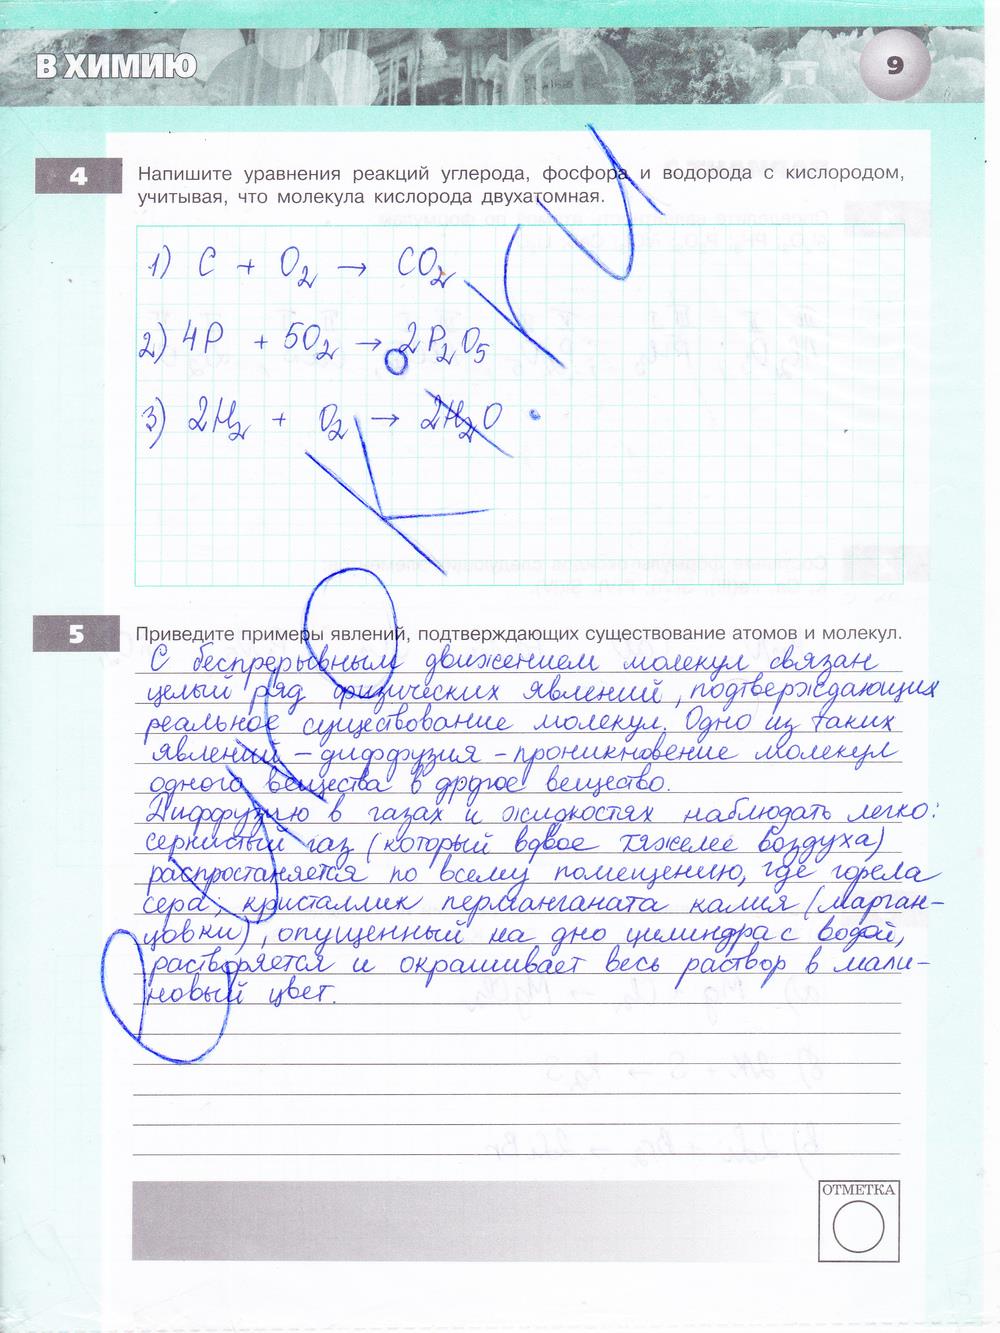 гдз 8 класс тетрадь-экзаменатор страница 9 химия Бобылева, Бирюлина